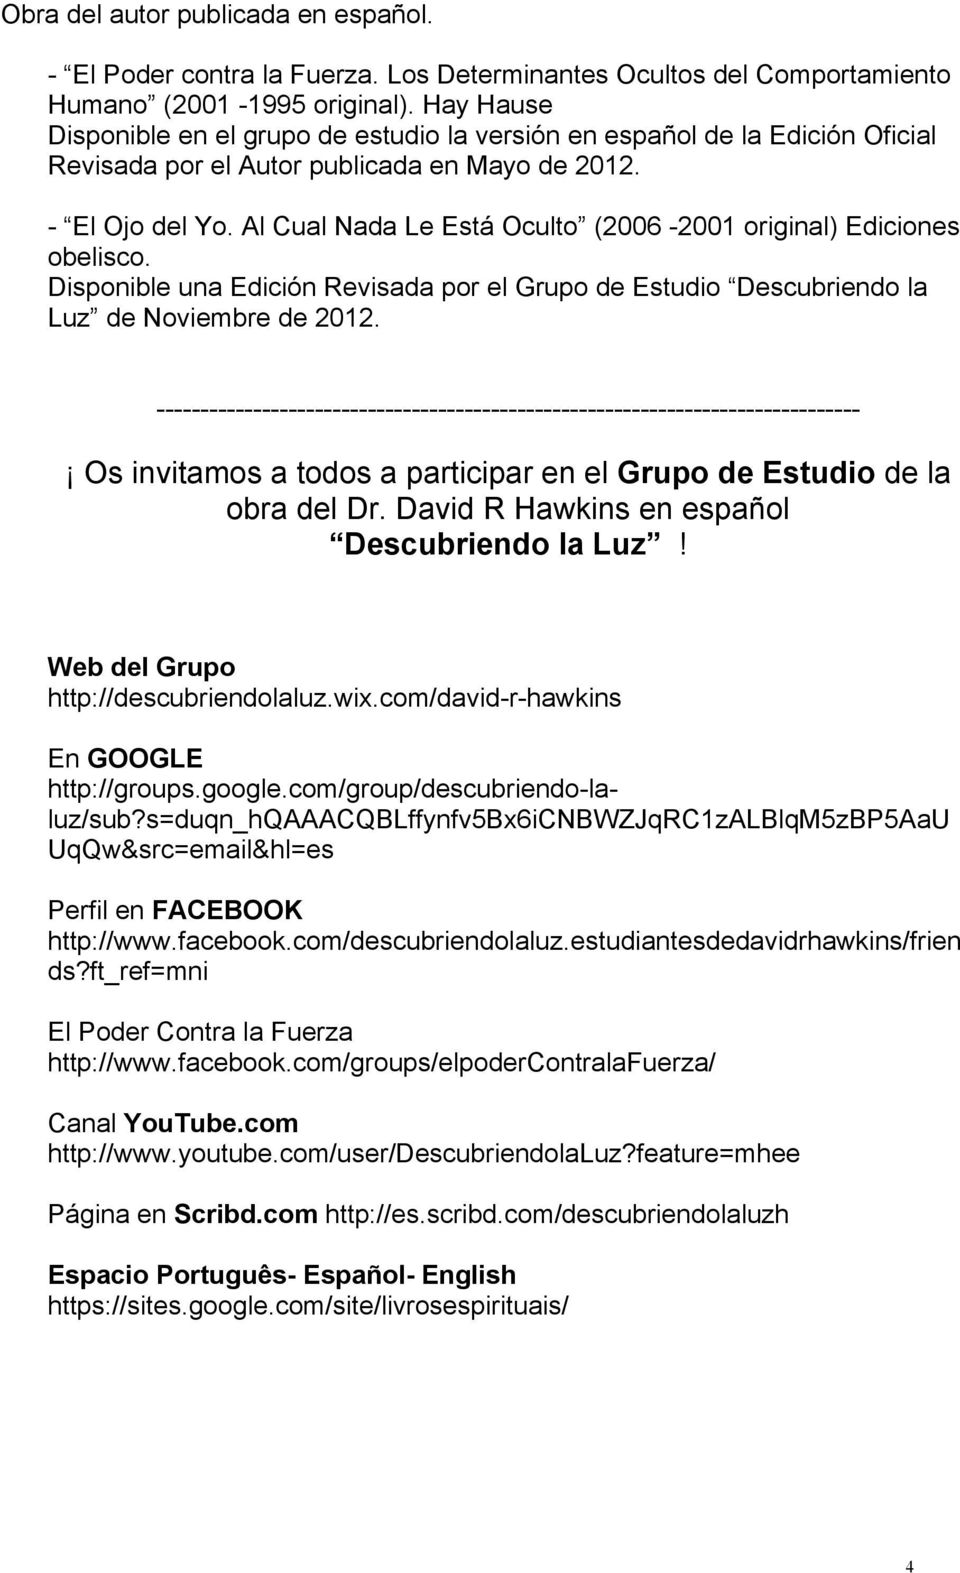 Al Cual Nada Le Está Oculto (2006-2001 original) Ediciones obelisco. Disponible una Edición Revisada por el Grupo de Estudio Descubriendo la Luz de Noviembre de 2012.